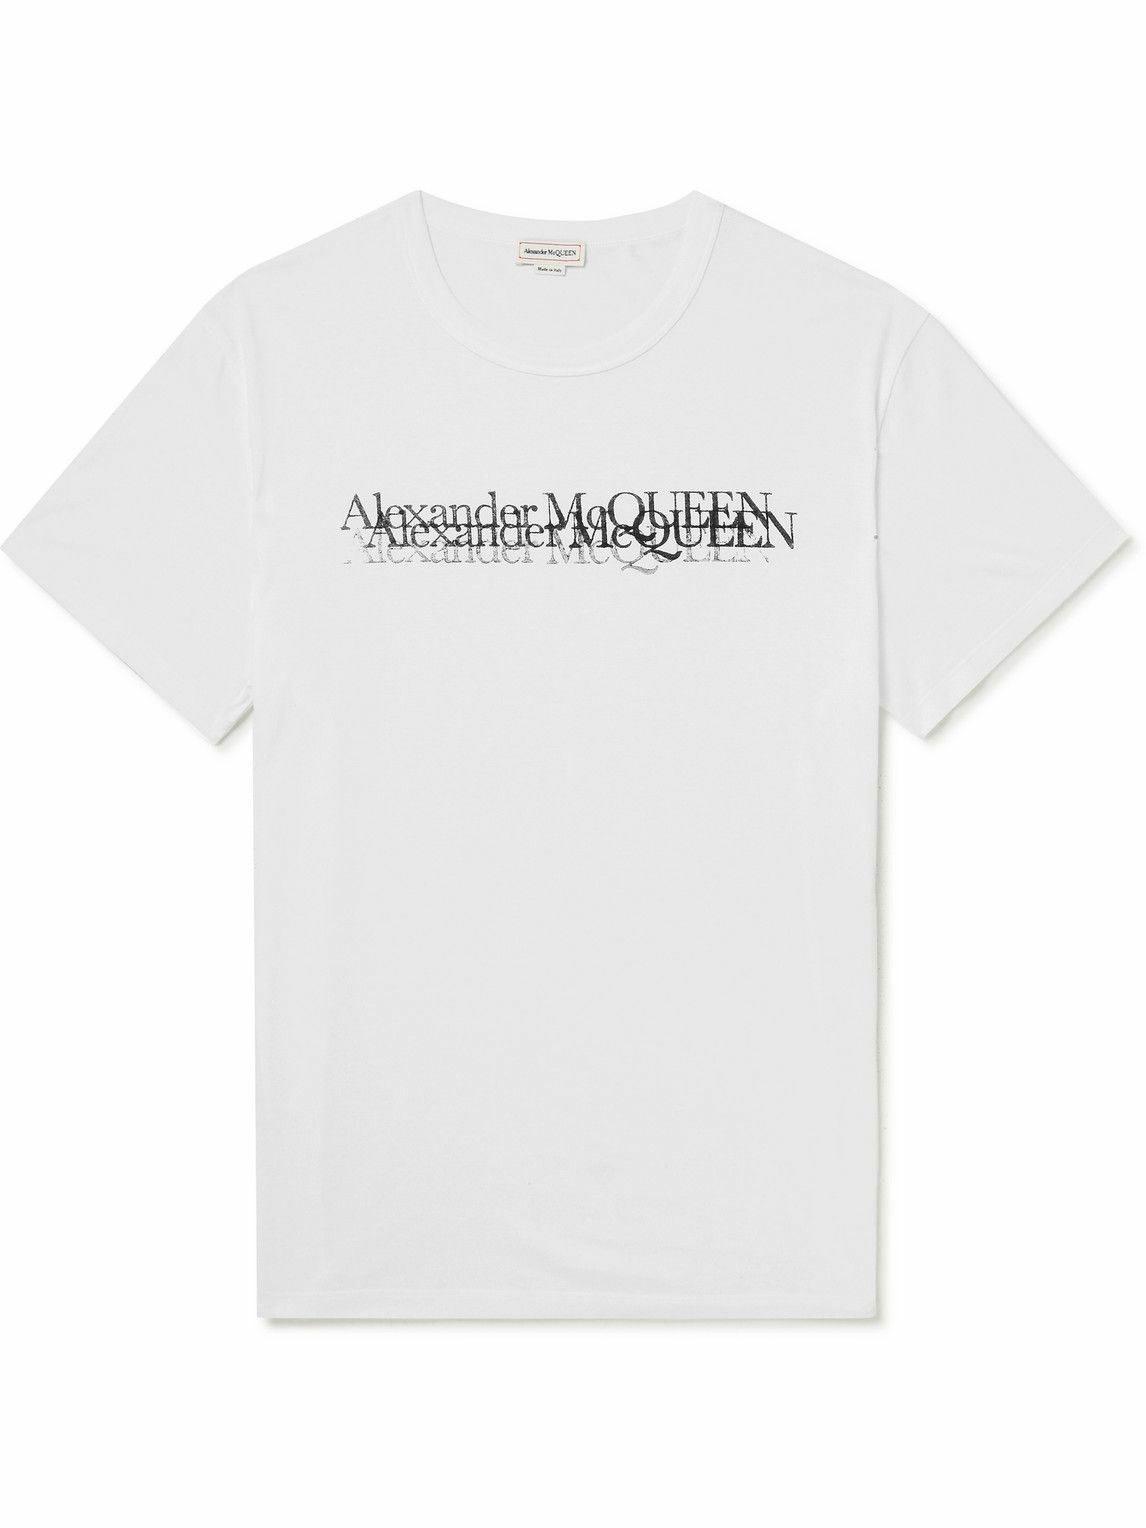 Alexander McQueen - Logo-Print Cotton-Jersey T-Shirt - White Alexander ...